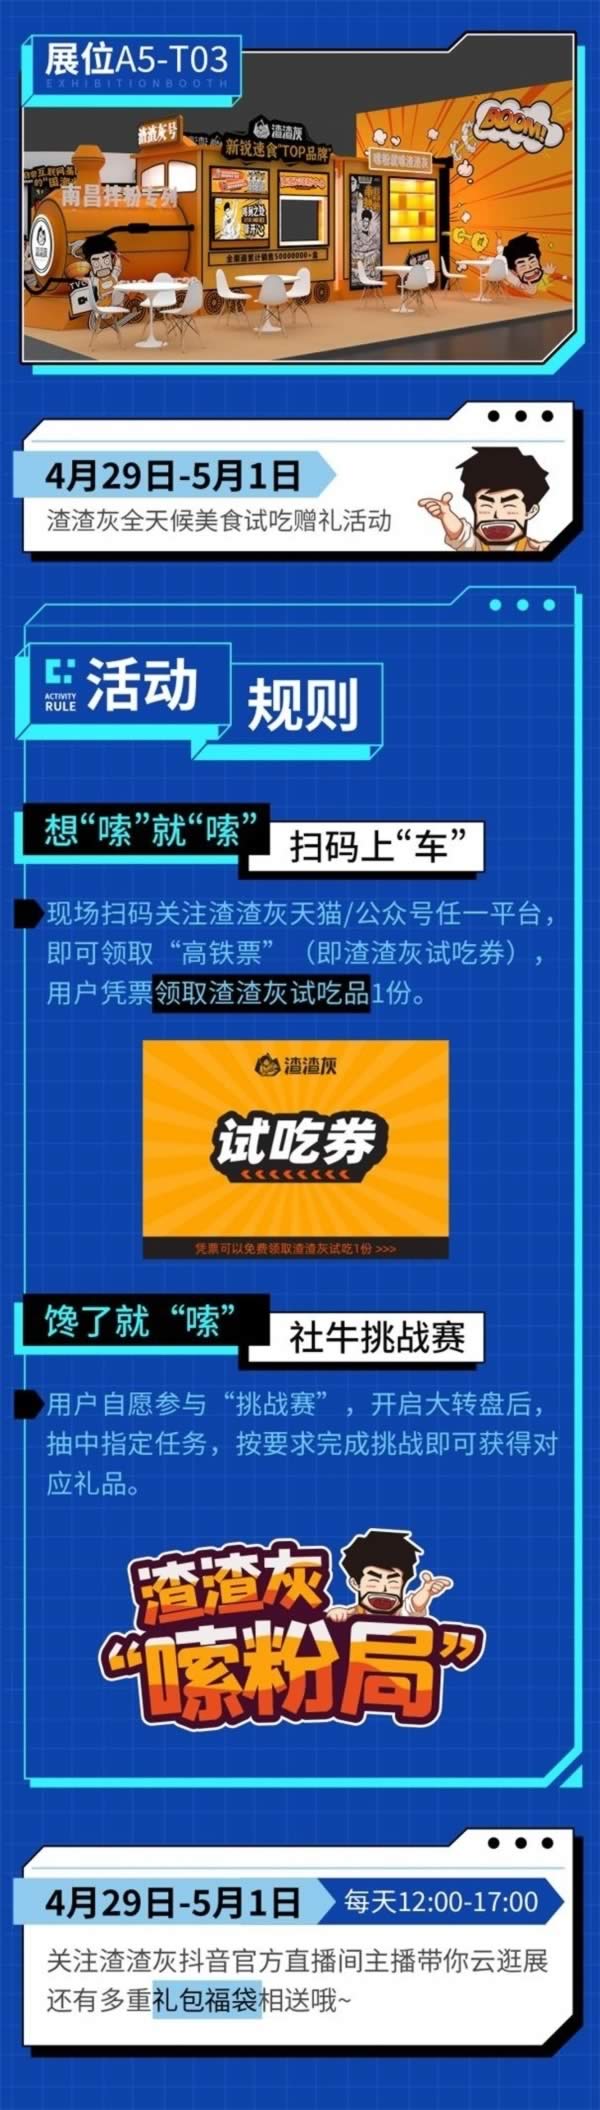 拟上市企业中旭未来参展首届中国国际数字互娱数字经济博览会5.jpg